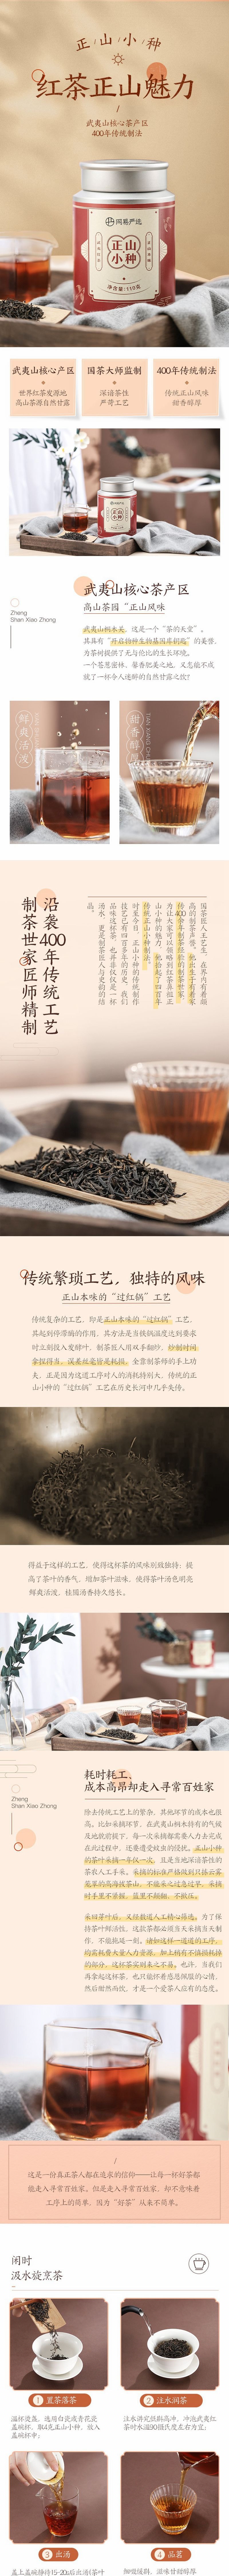 YANXUAN Lapsang Sauchong Tea 100g